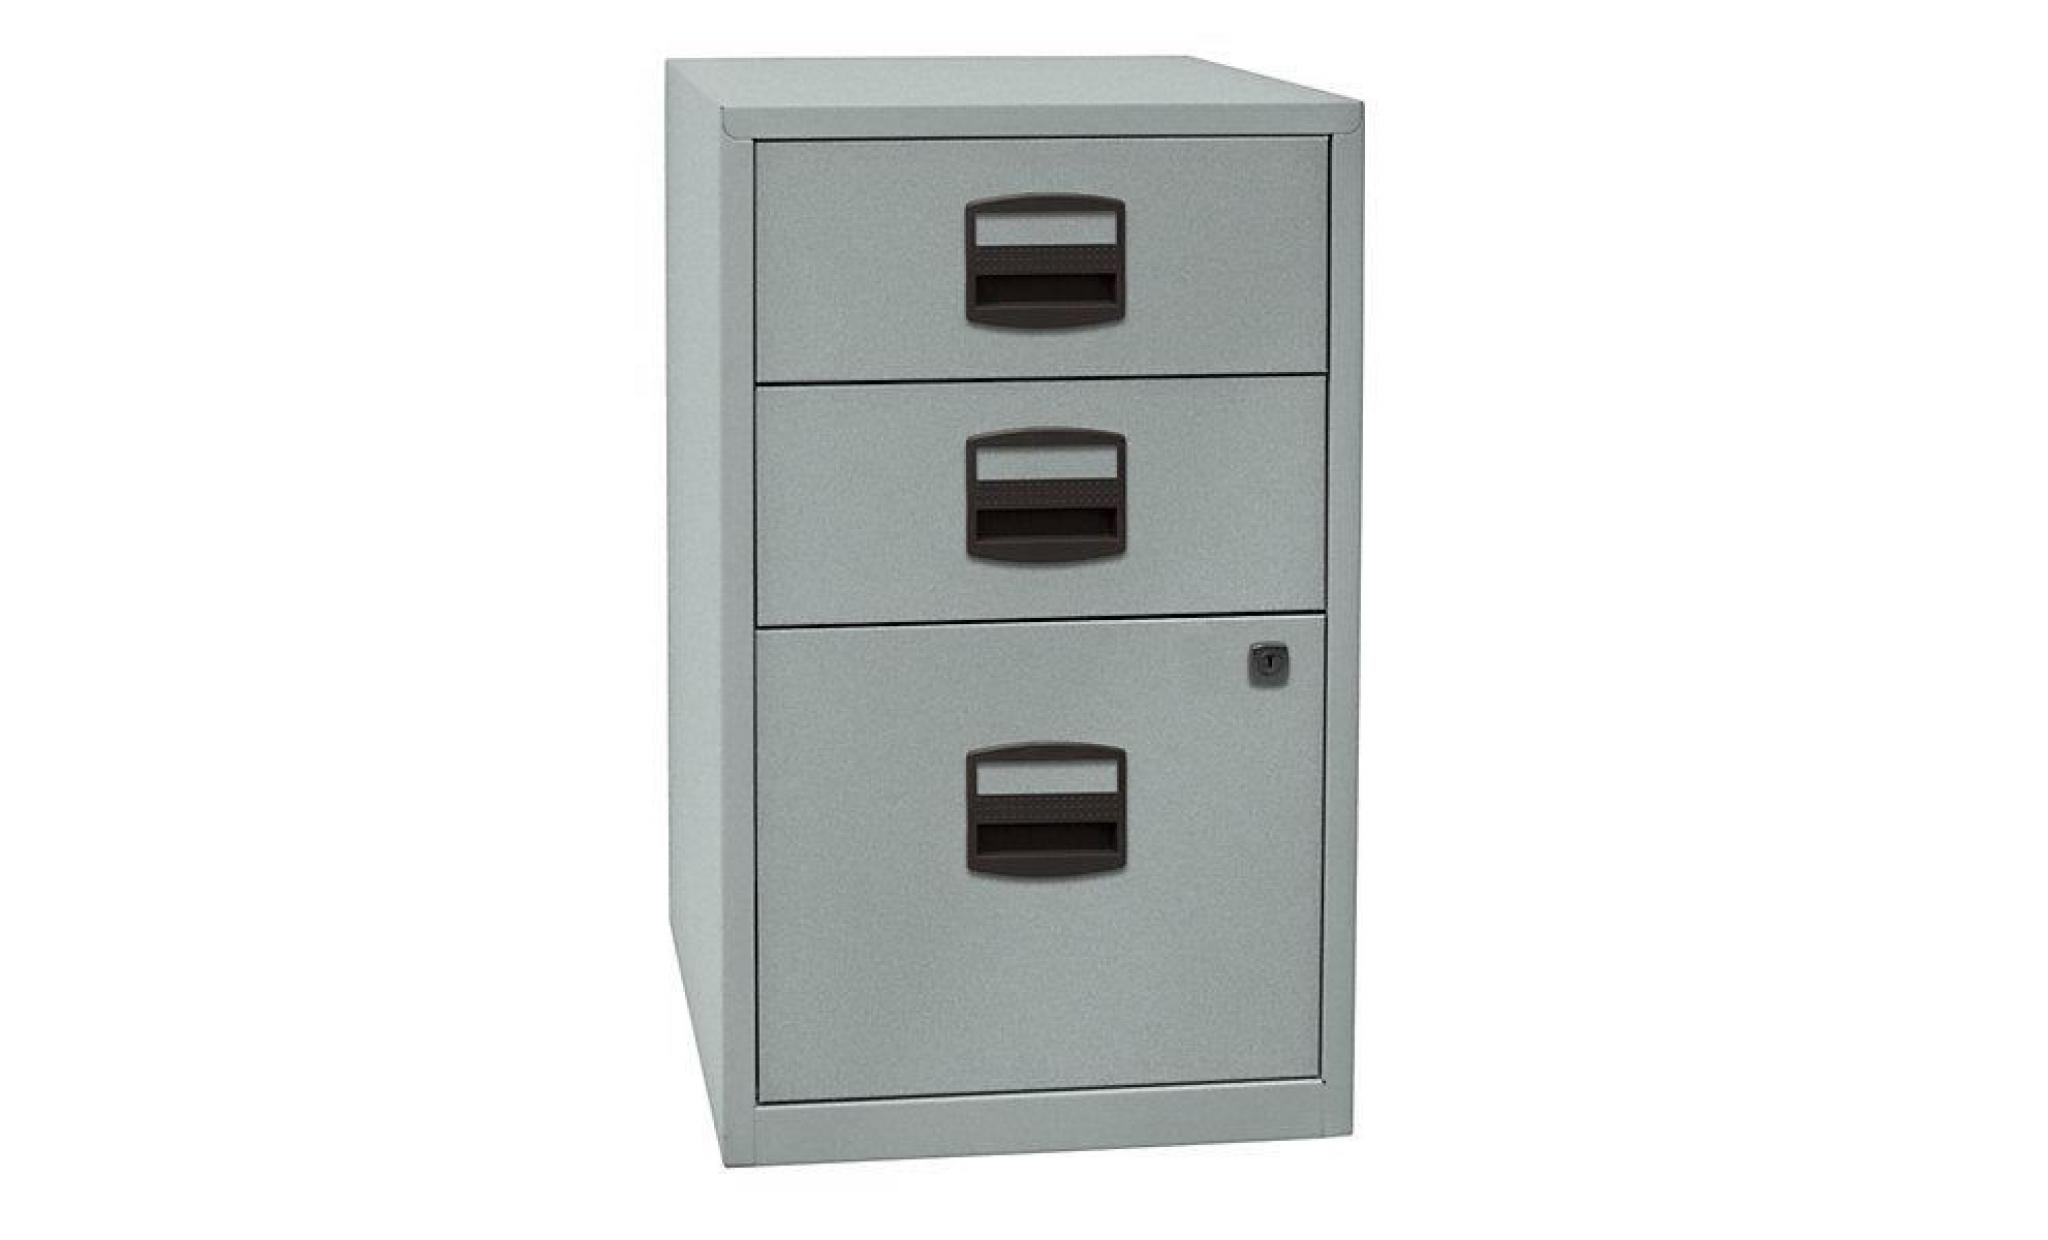 armoire hauteur bureau pfa   2 tiroirs, 1 tiroir pour ds argent   armoire basse armoire de bureau armoire à tiroirs armoires basses